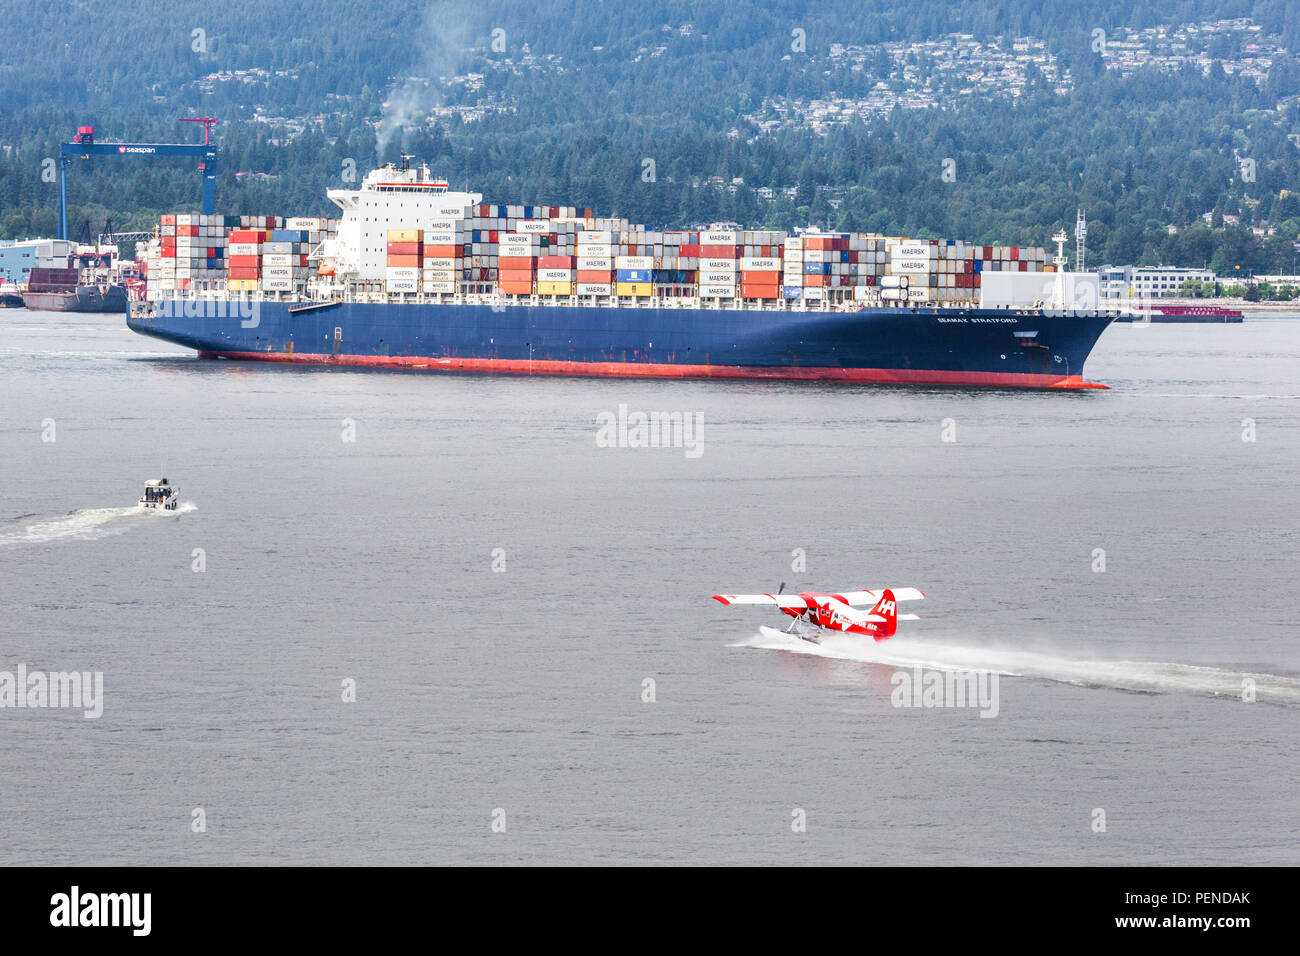 Ein Tourist mit dem Wasserflugzeug in ganz in der Nähe der Container schiff Seamax Stratford im Hafen von Vancouver, British Columbia, Kanada Stockfoto